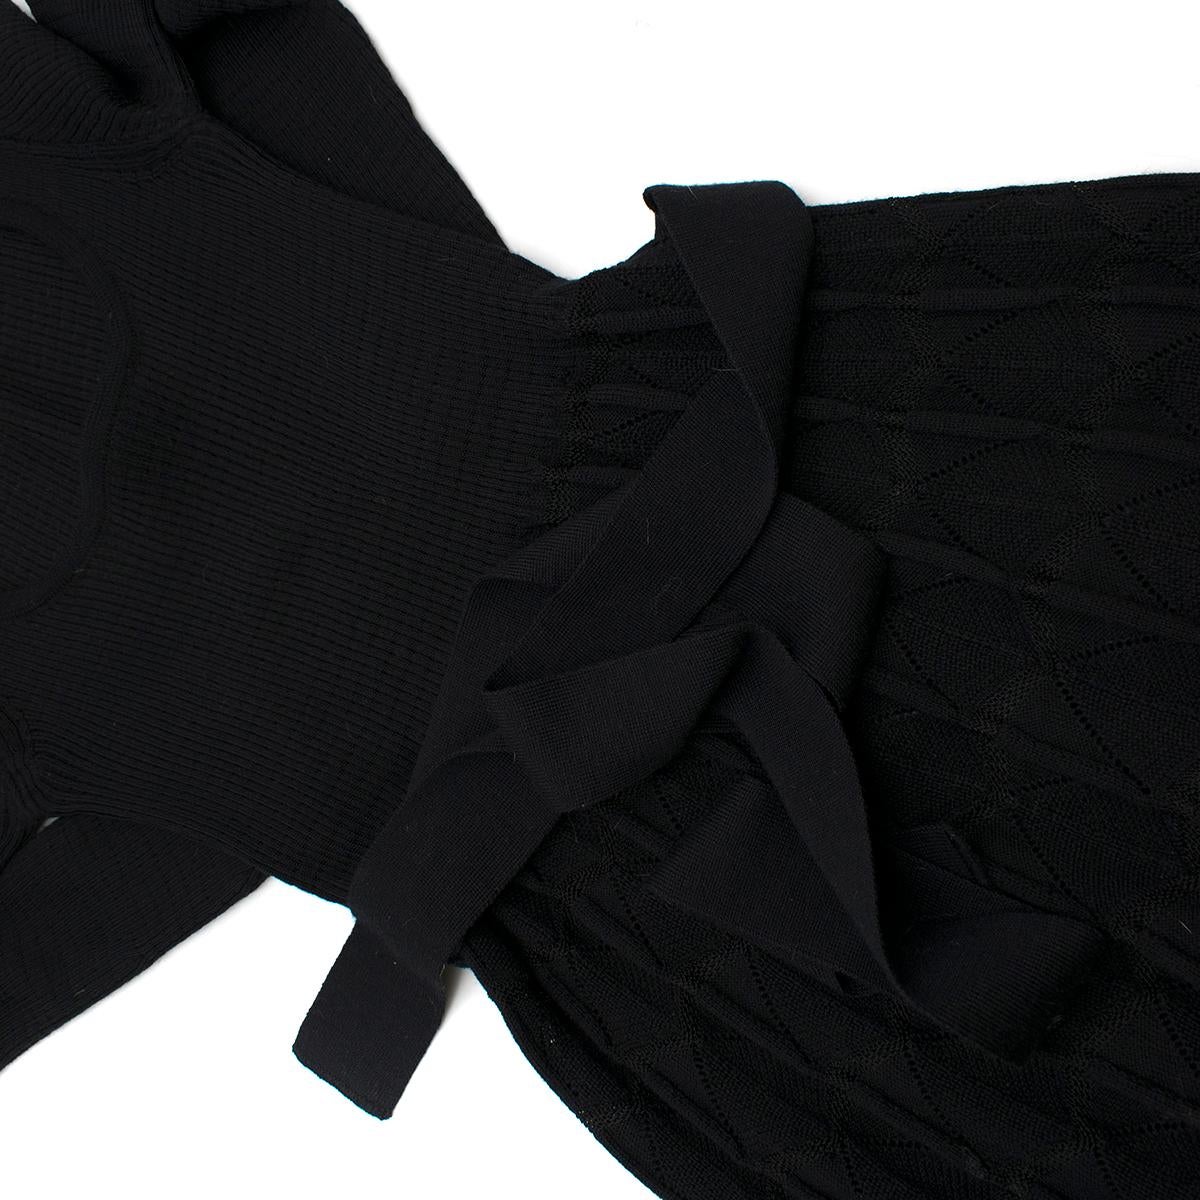 Missoni Black Crotchet Knit-Patterned Stretch Rope Dress - Size US 4 2